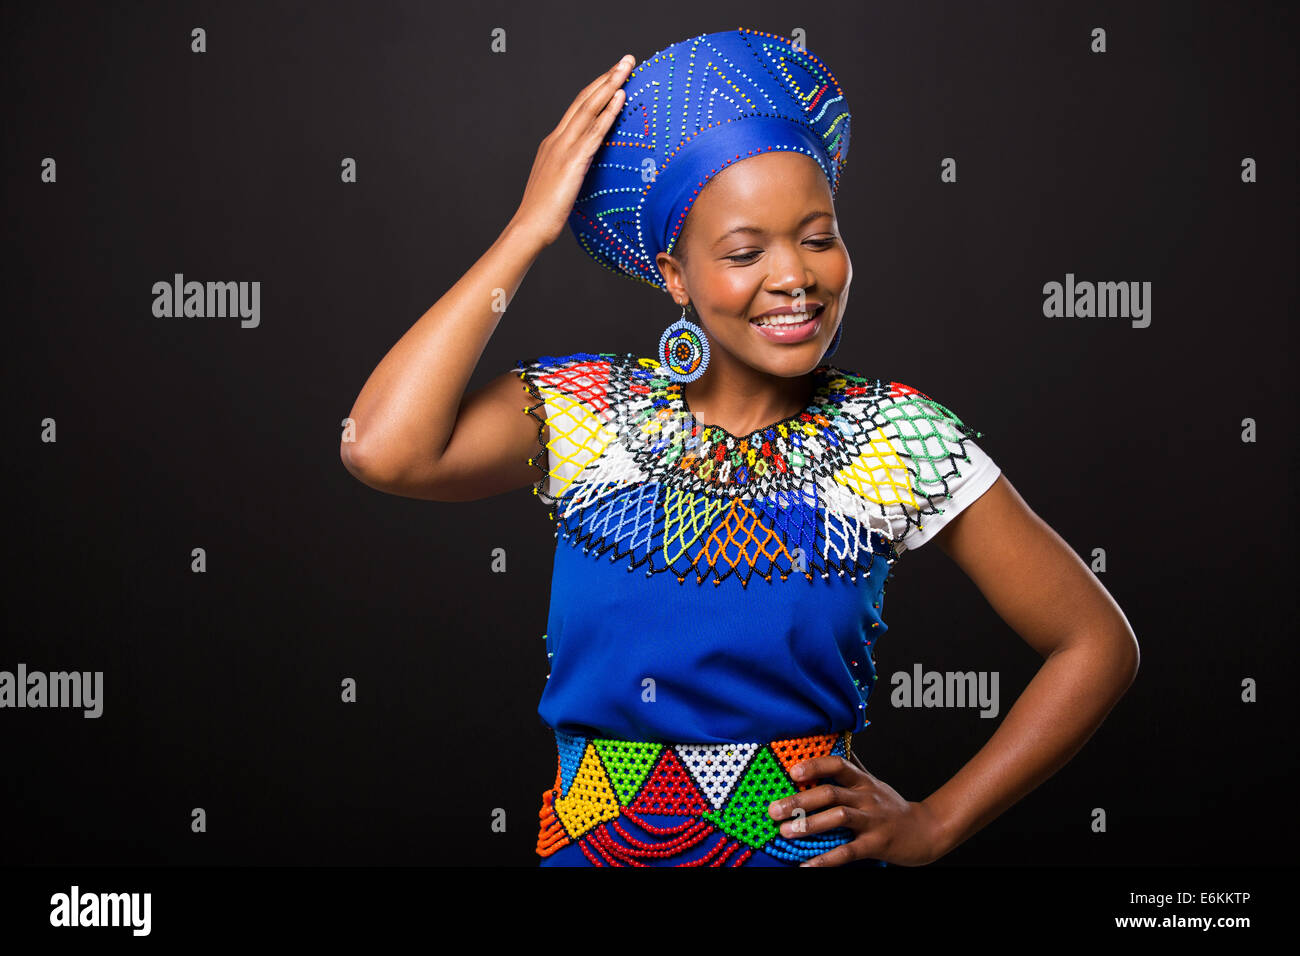 Mode africaine Banque de photographies et d'images à haute résolution -  Alamy